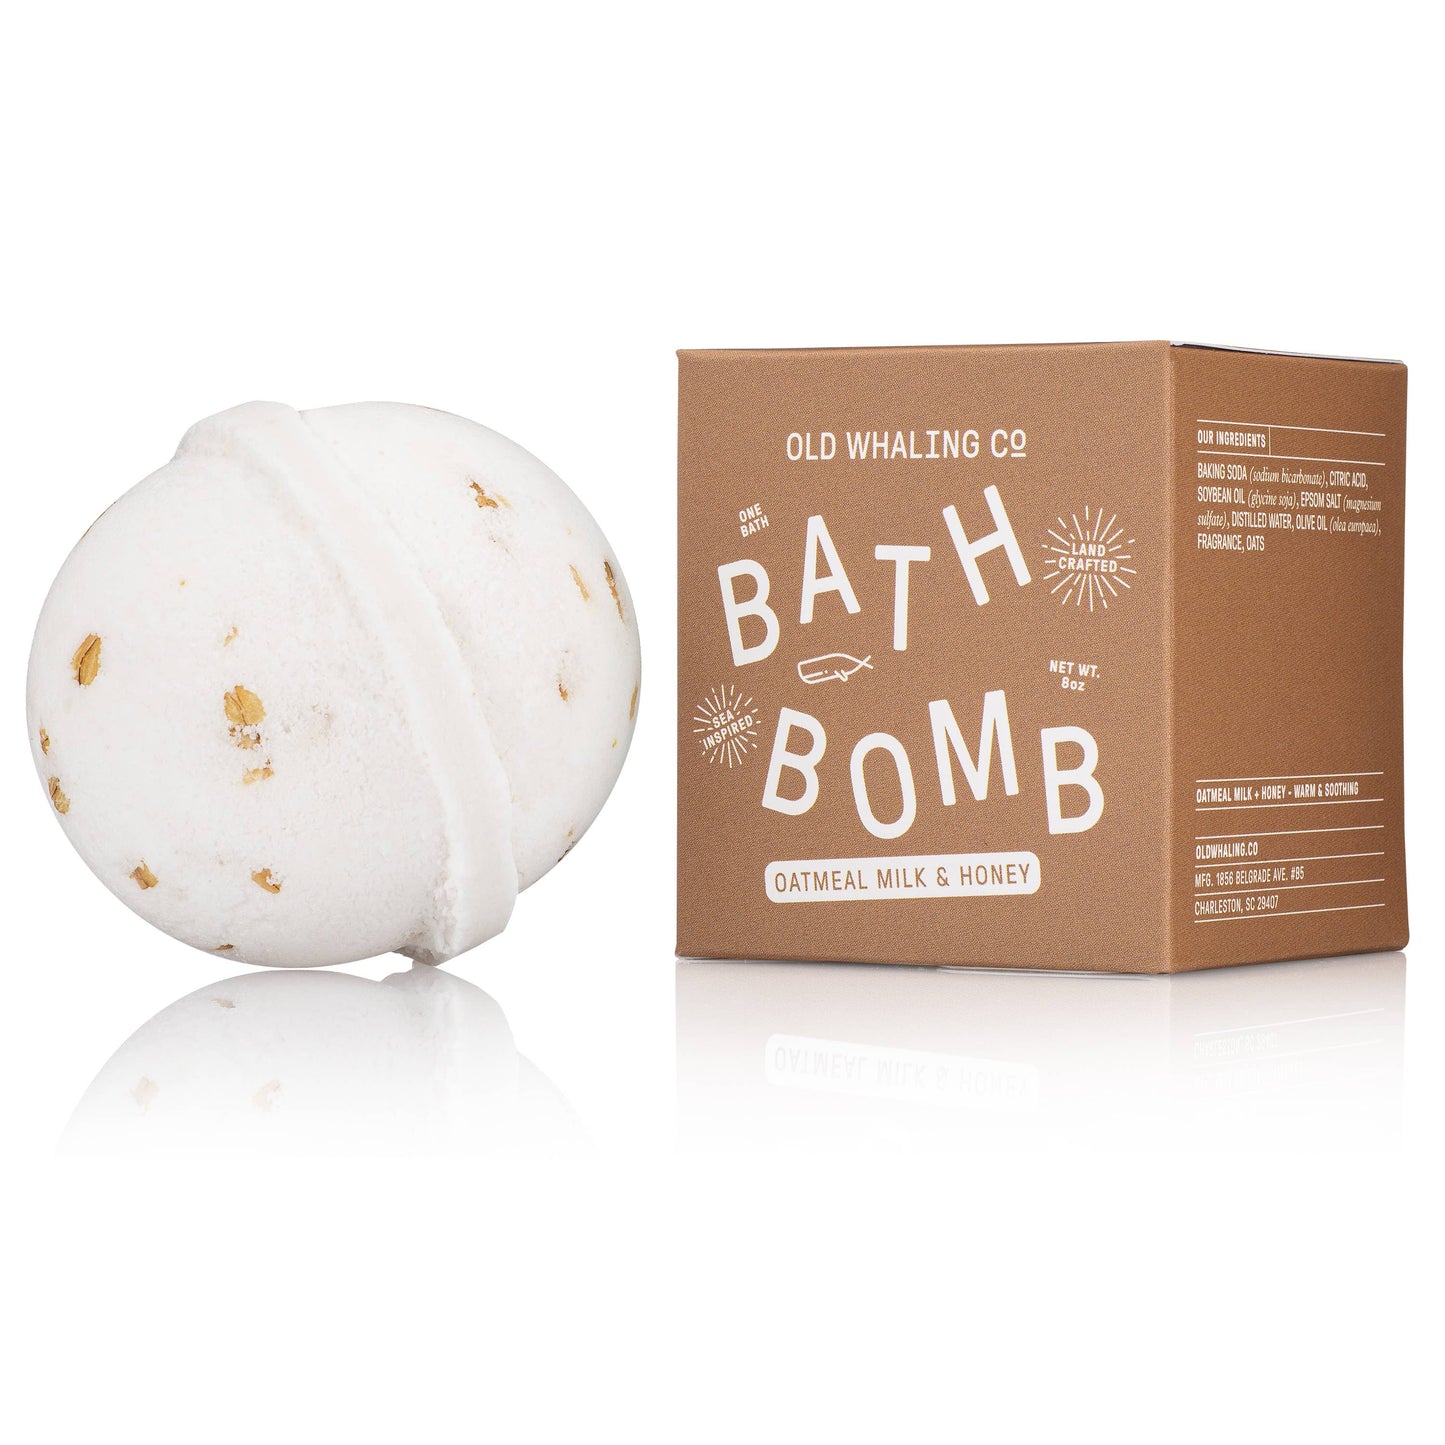 Bath Bomb Oatmeal Milk & Honey